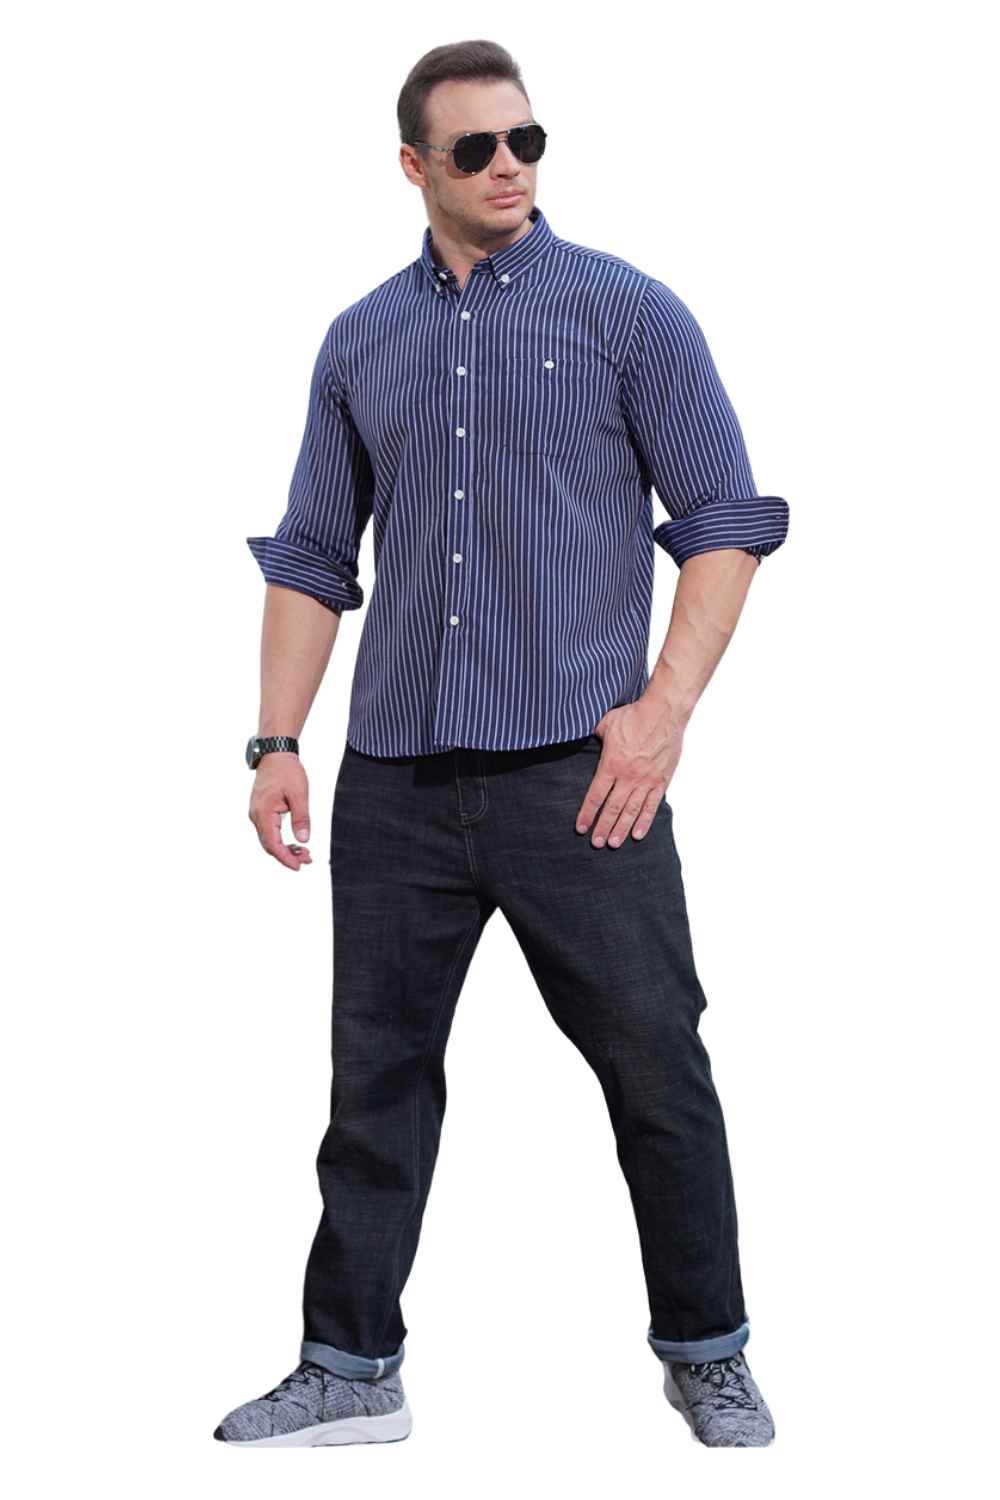 Men's Button-Down Collar Shirt Cotton Stripes - A.A.Y FASHION